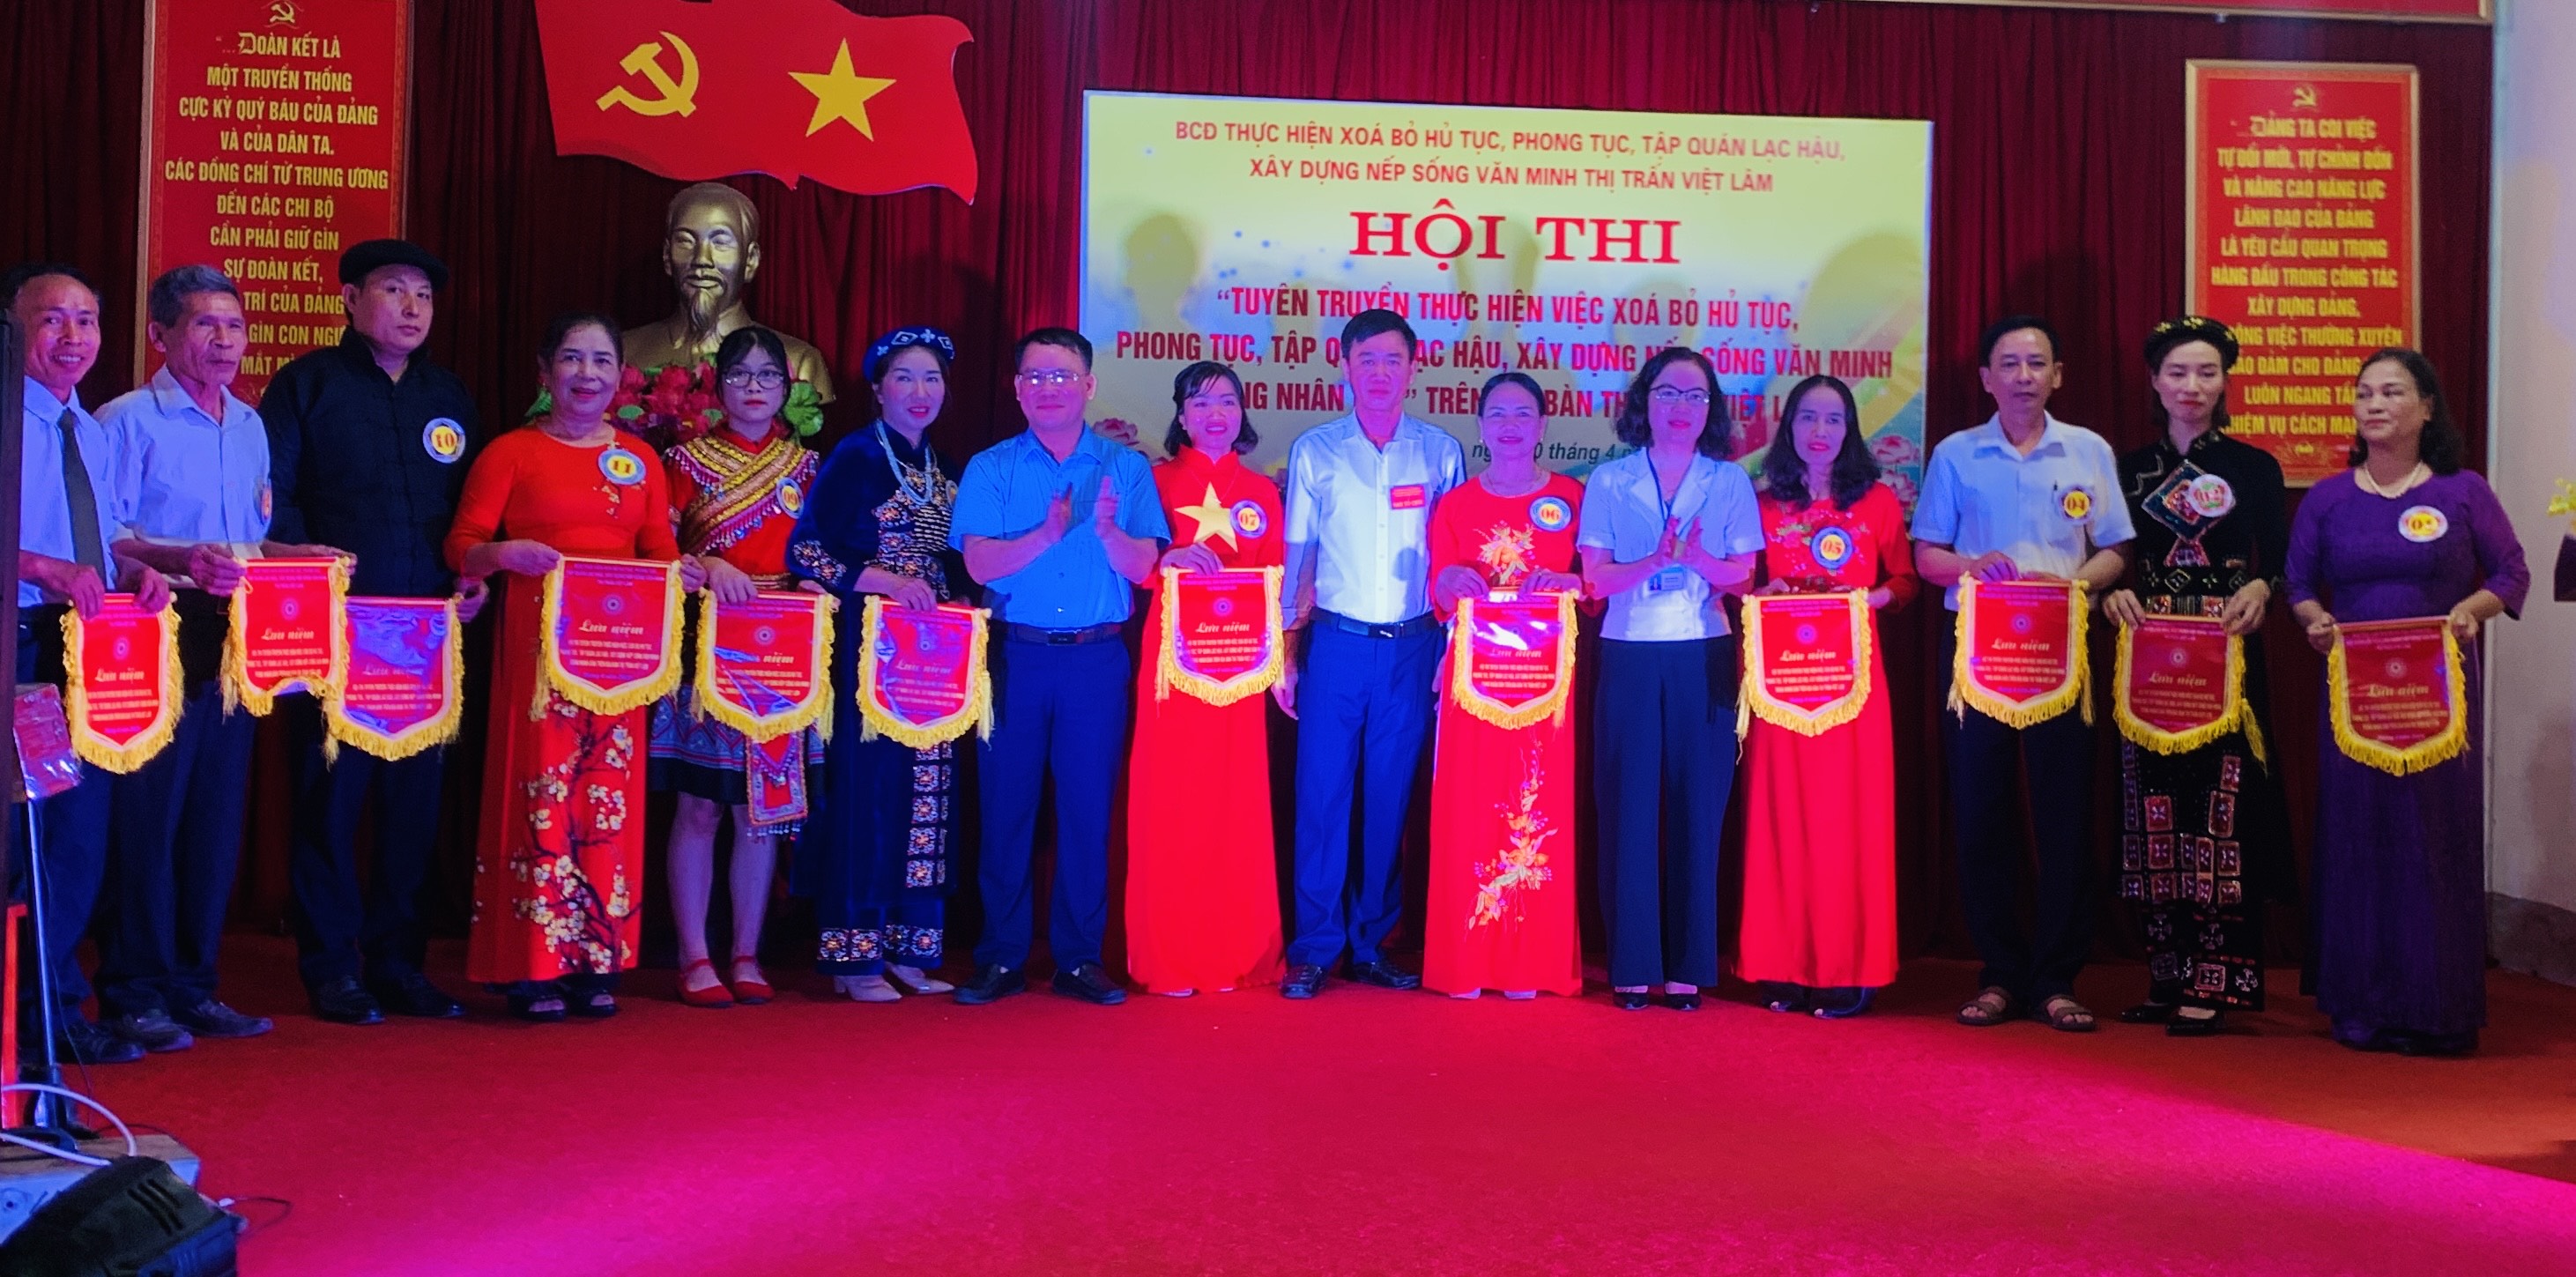 Thị trấn Việt Lâm tổ chức Hội thi tuyên truyền xóa bỏ hủ tục lạc hậu xây dựng nếp sống văn minh